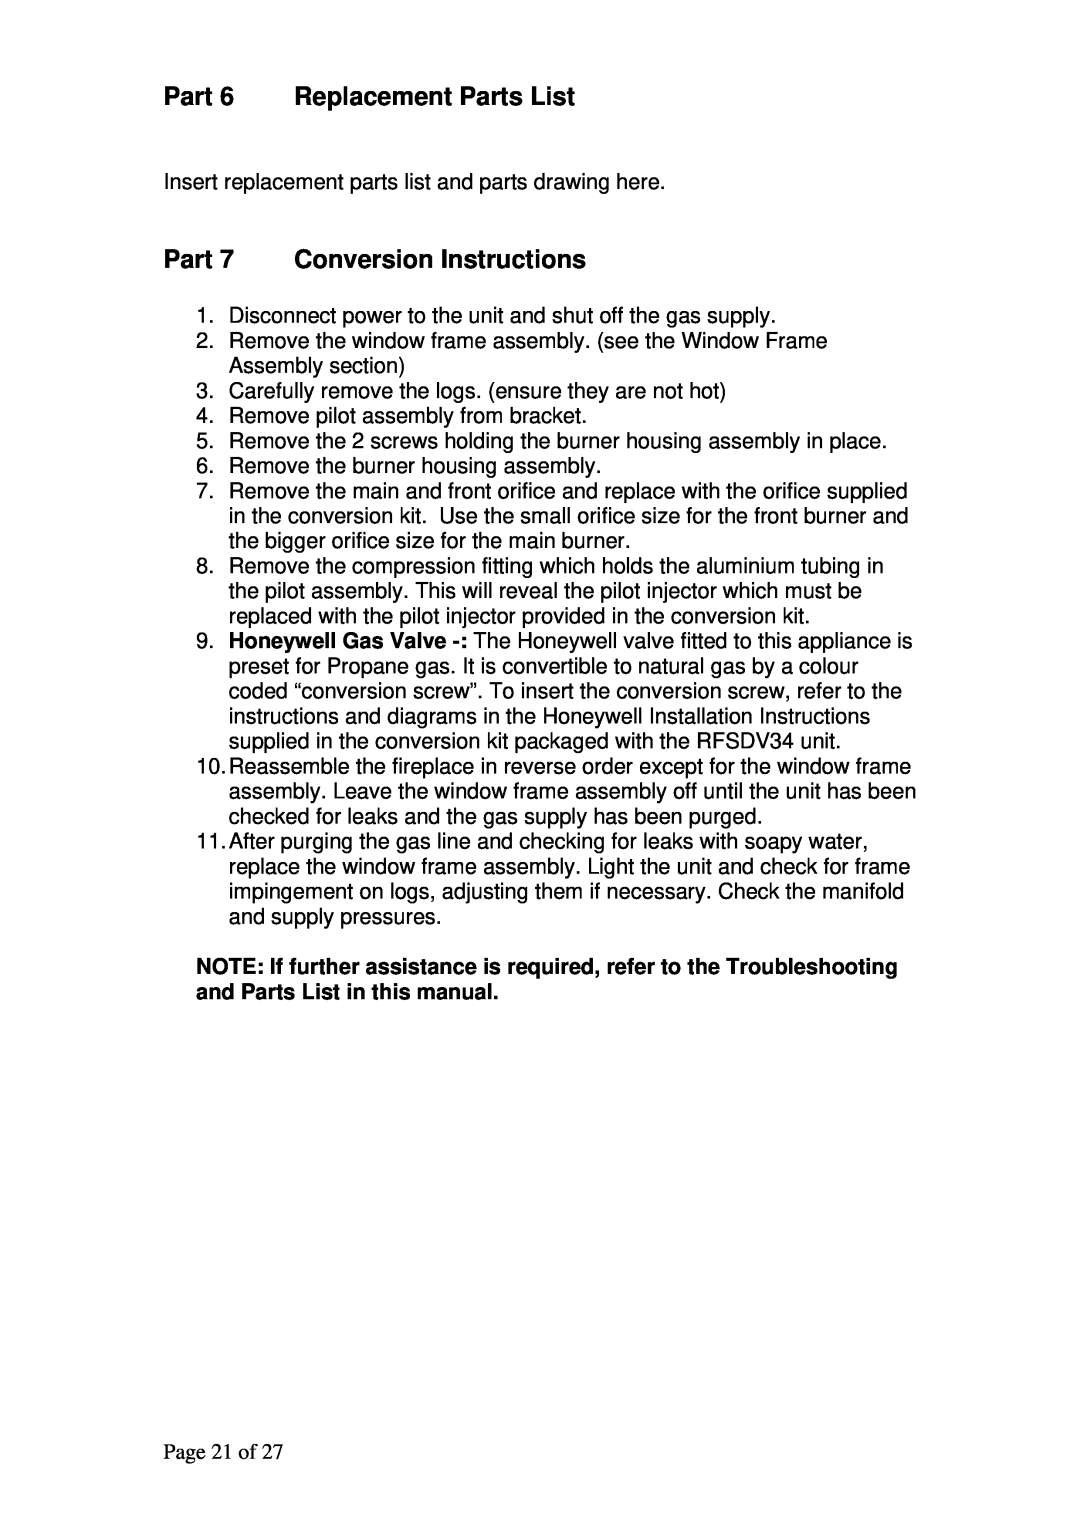 Raypak RFSDV34RFPAU, RFSDV34RFNAU manual Part 6 Replacement Parts List, Part 7 Conversion Instructions, Page 21 of 